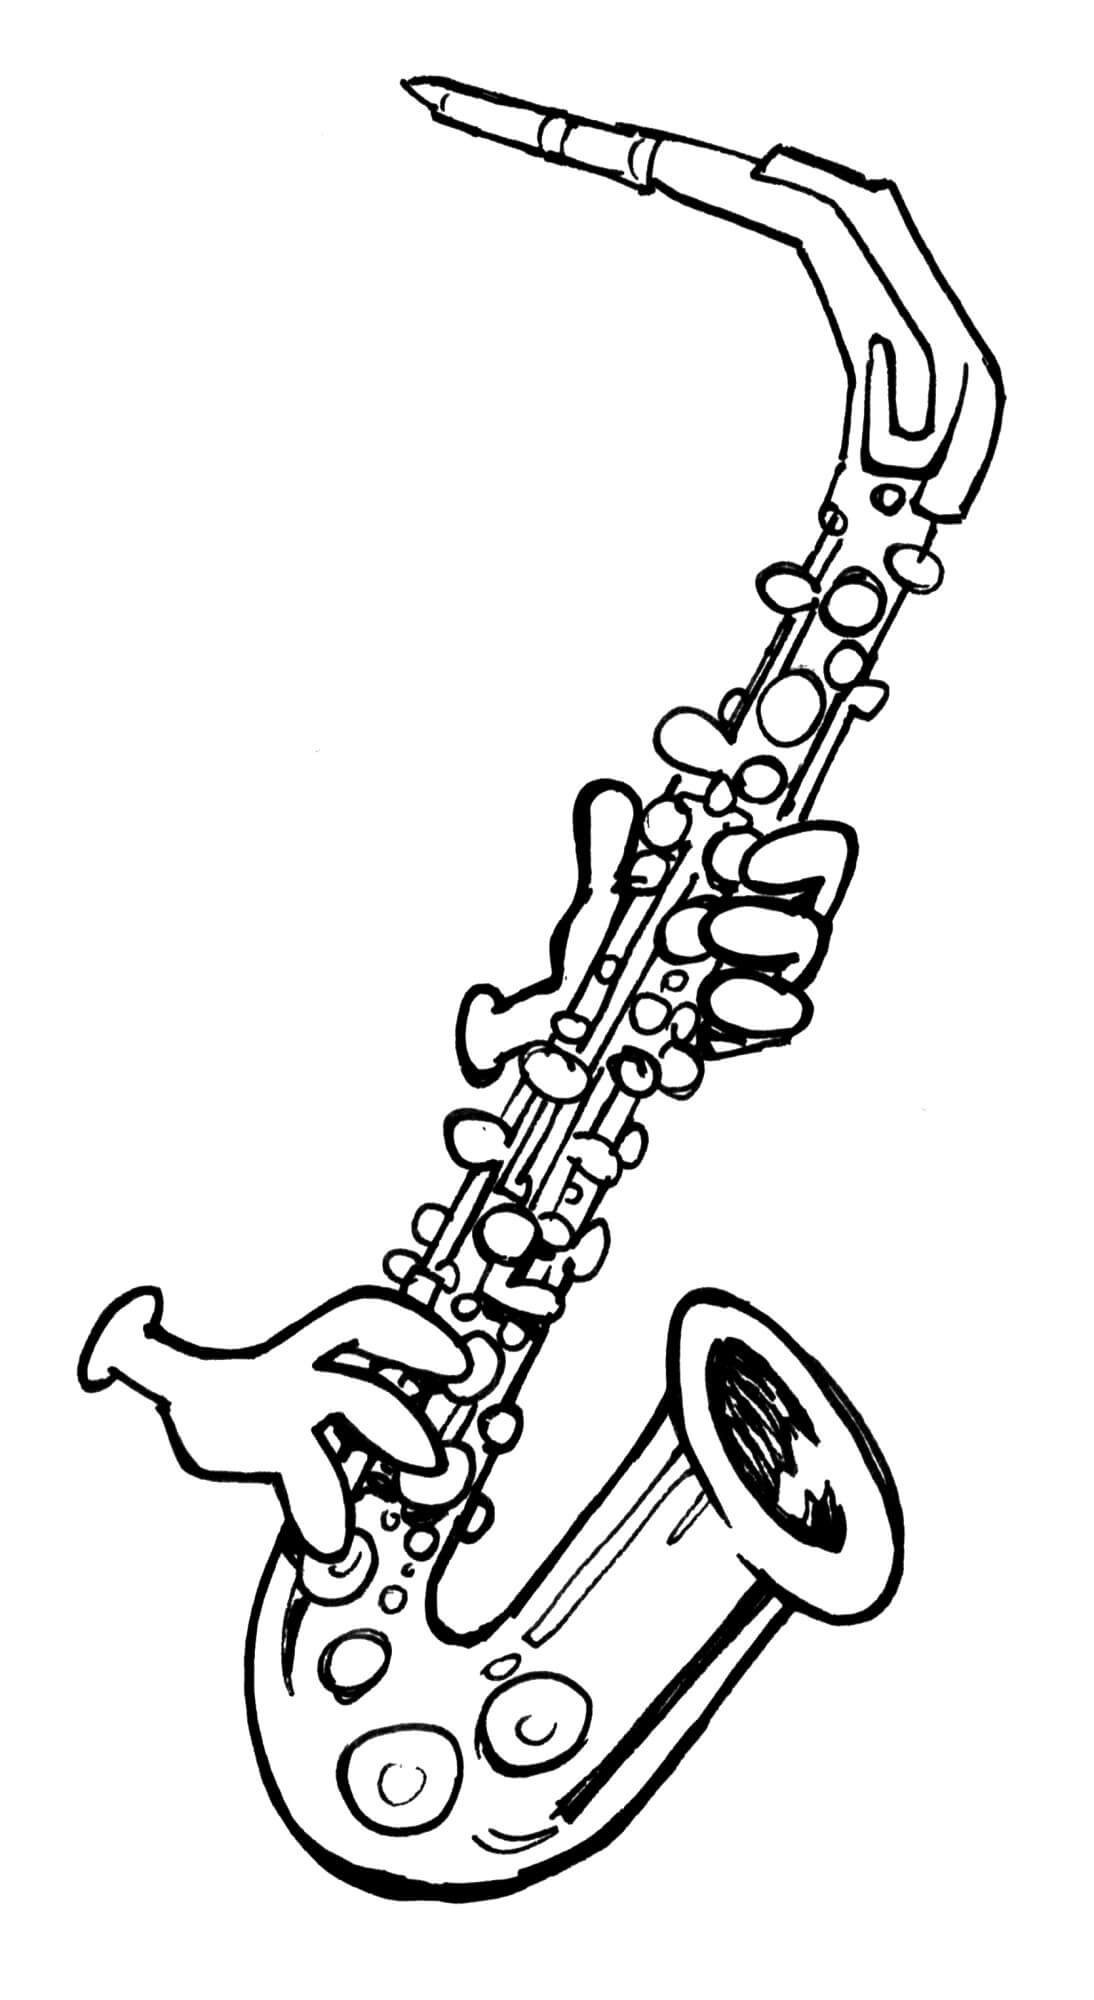 Coloriage Jouer du Saxophone